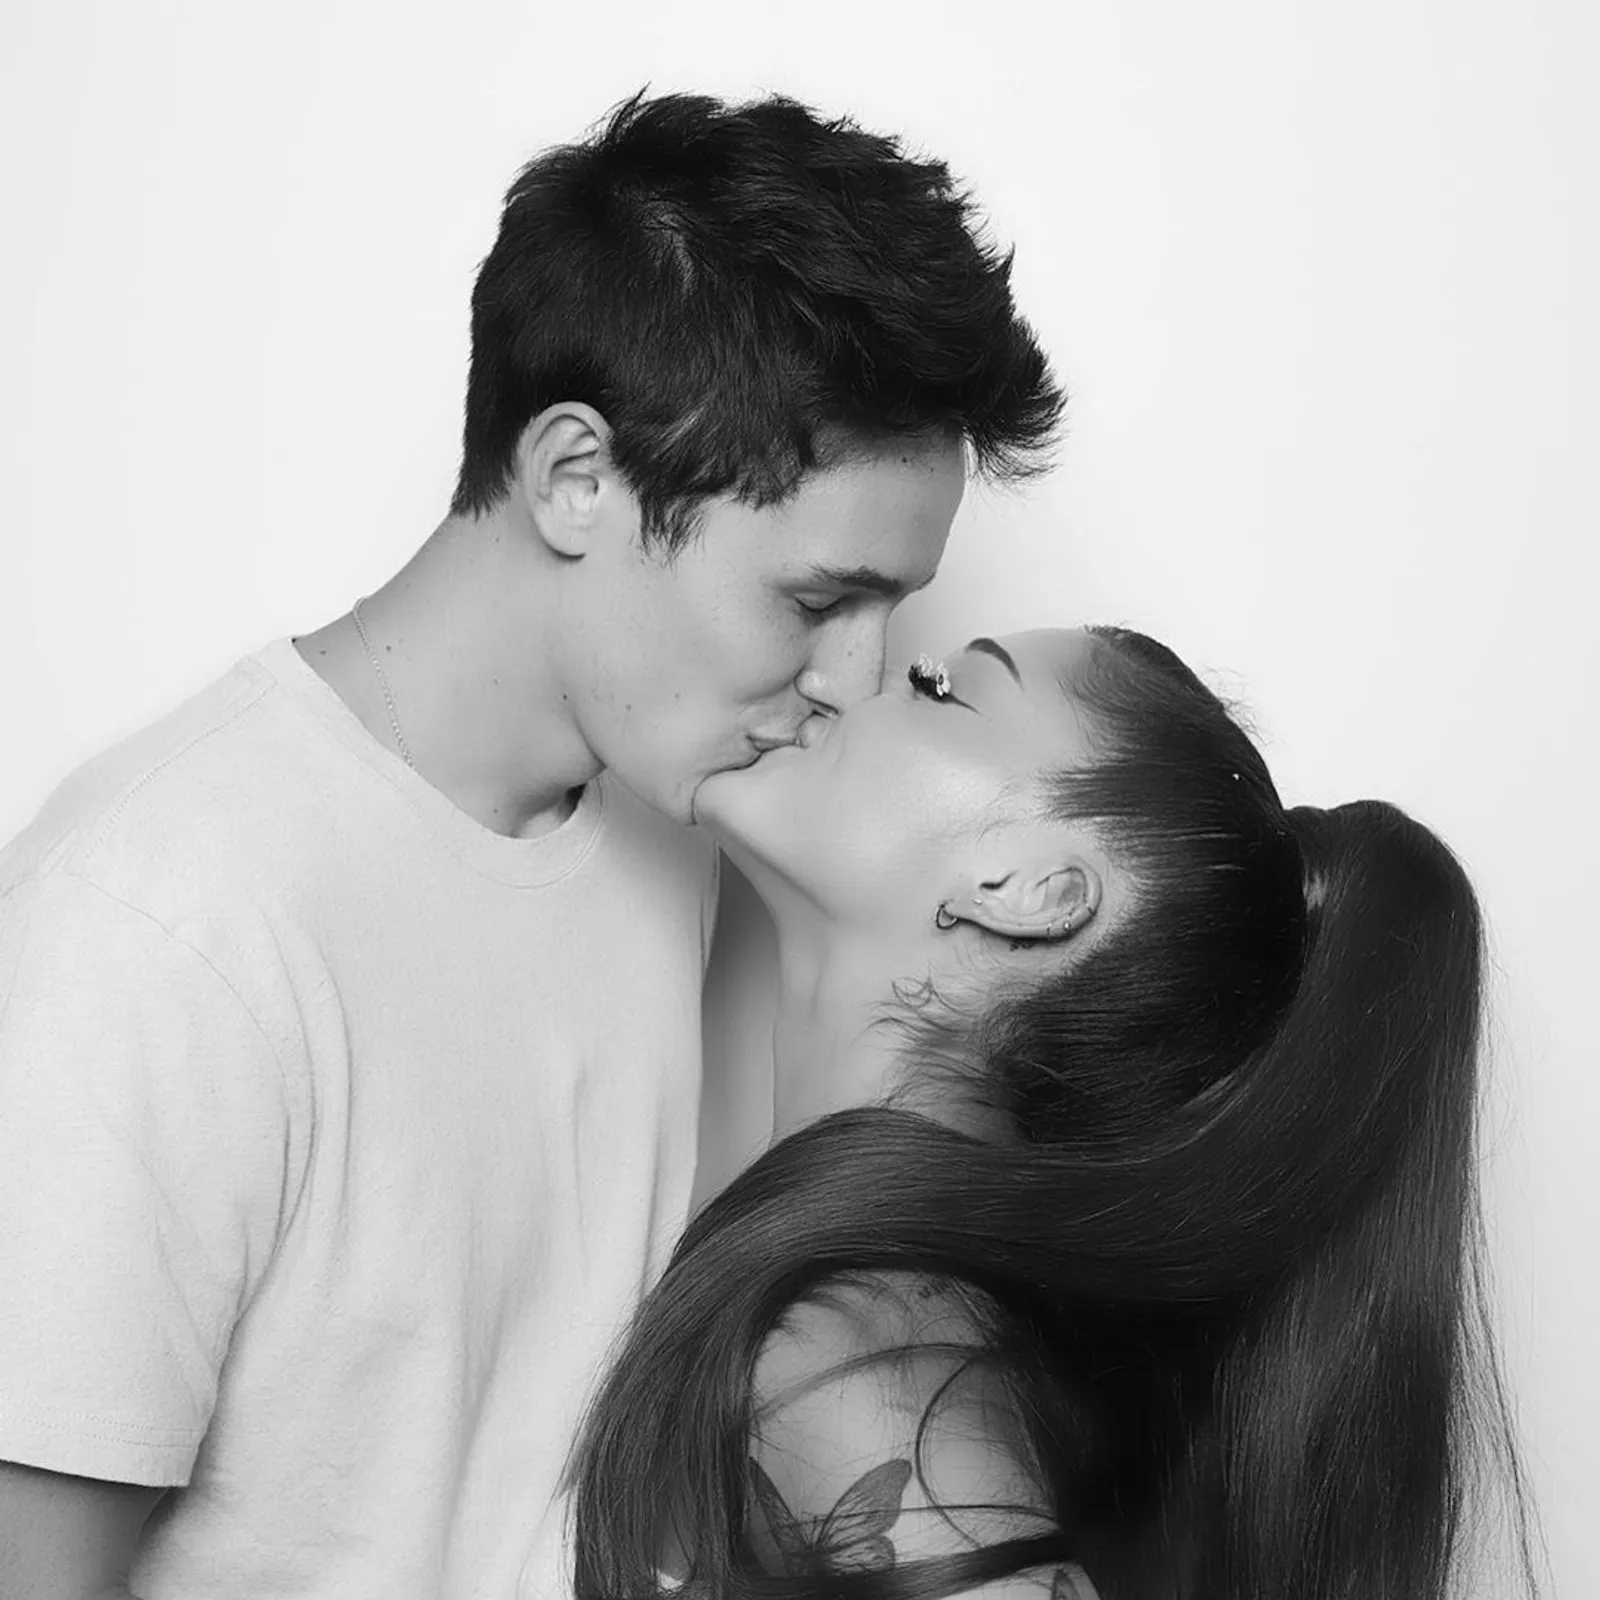 Unggah Foto Ciuman Sama Pacar, Ini Potret Ariana Grande Rayakan Ultah